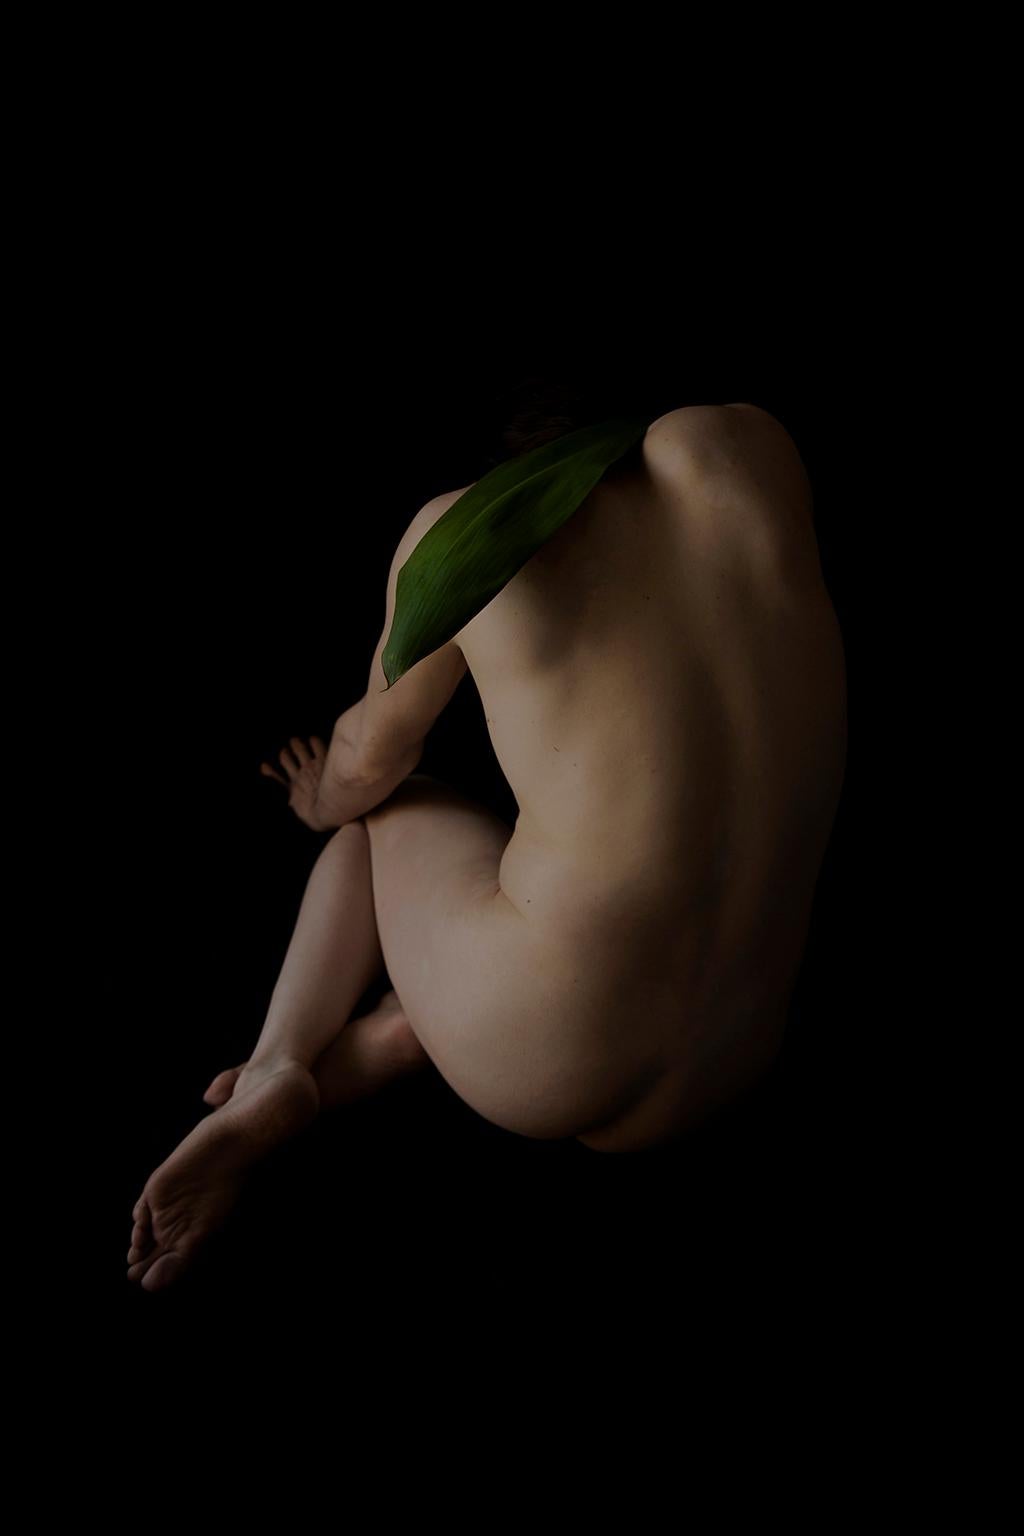 Color Photograph Ricky Cohete - Espina. Provenant de la série Viva. Photographie de nu masculin en couleur